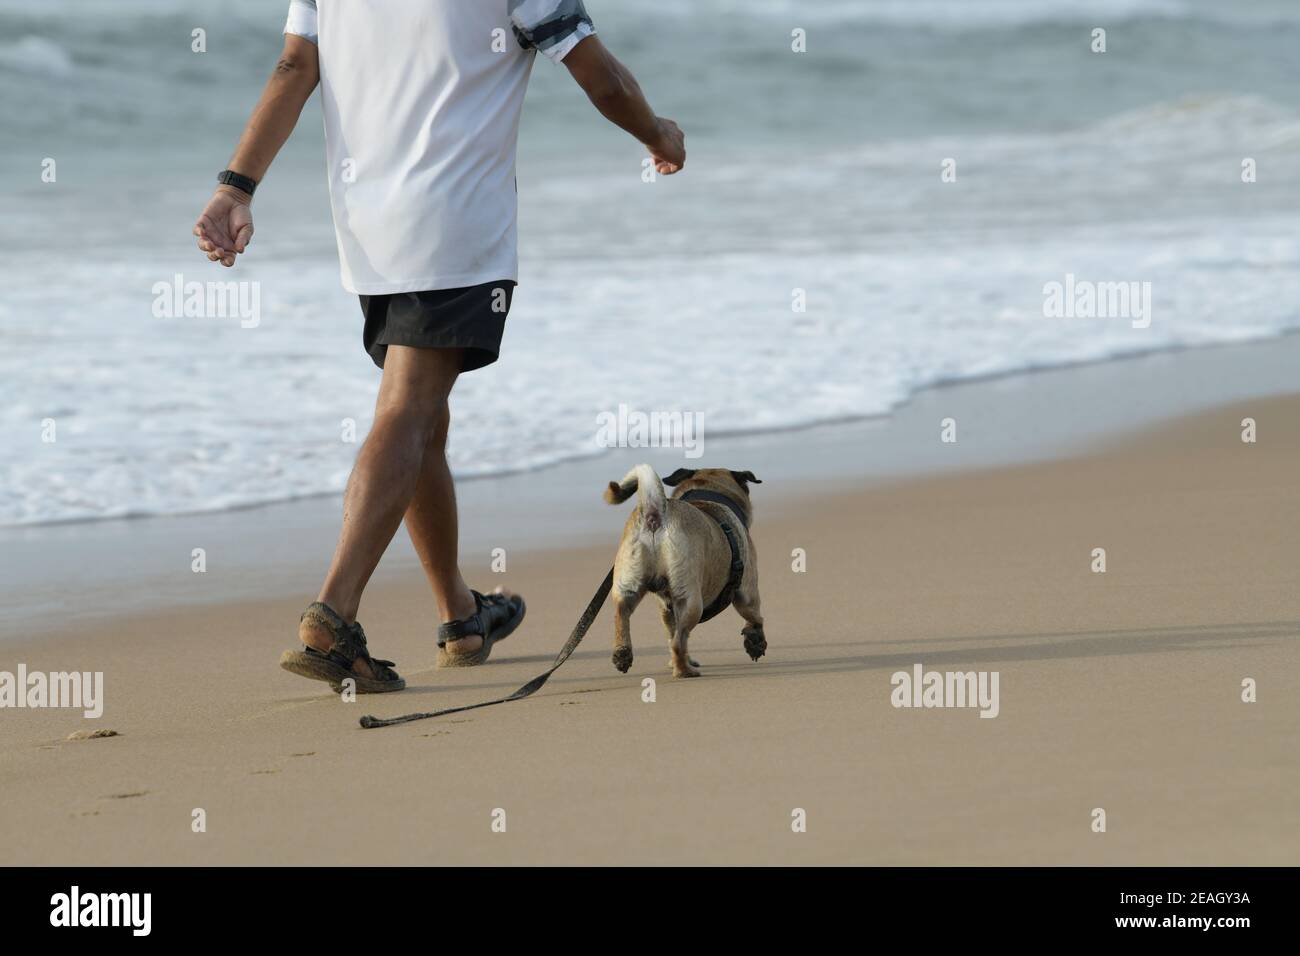 Personnes, adulte homme chien de marche sur la plage, santé animale, chiens actifs, Durban, Afrique du Sud, meilleur ami de l'homme, chien de compagnie, stimulation mentale Banque D'Images